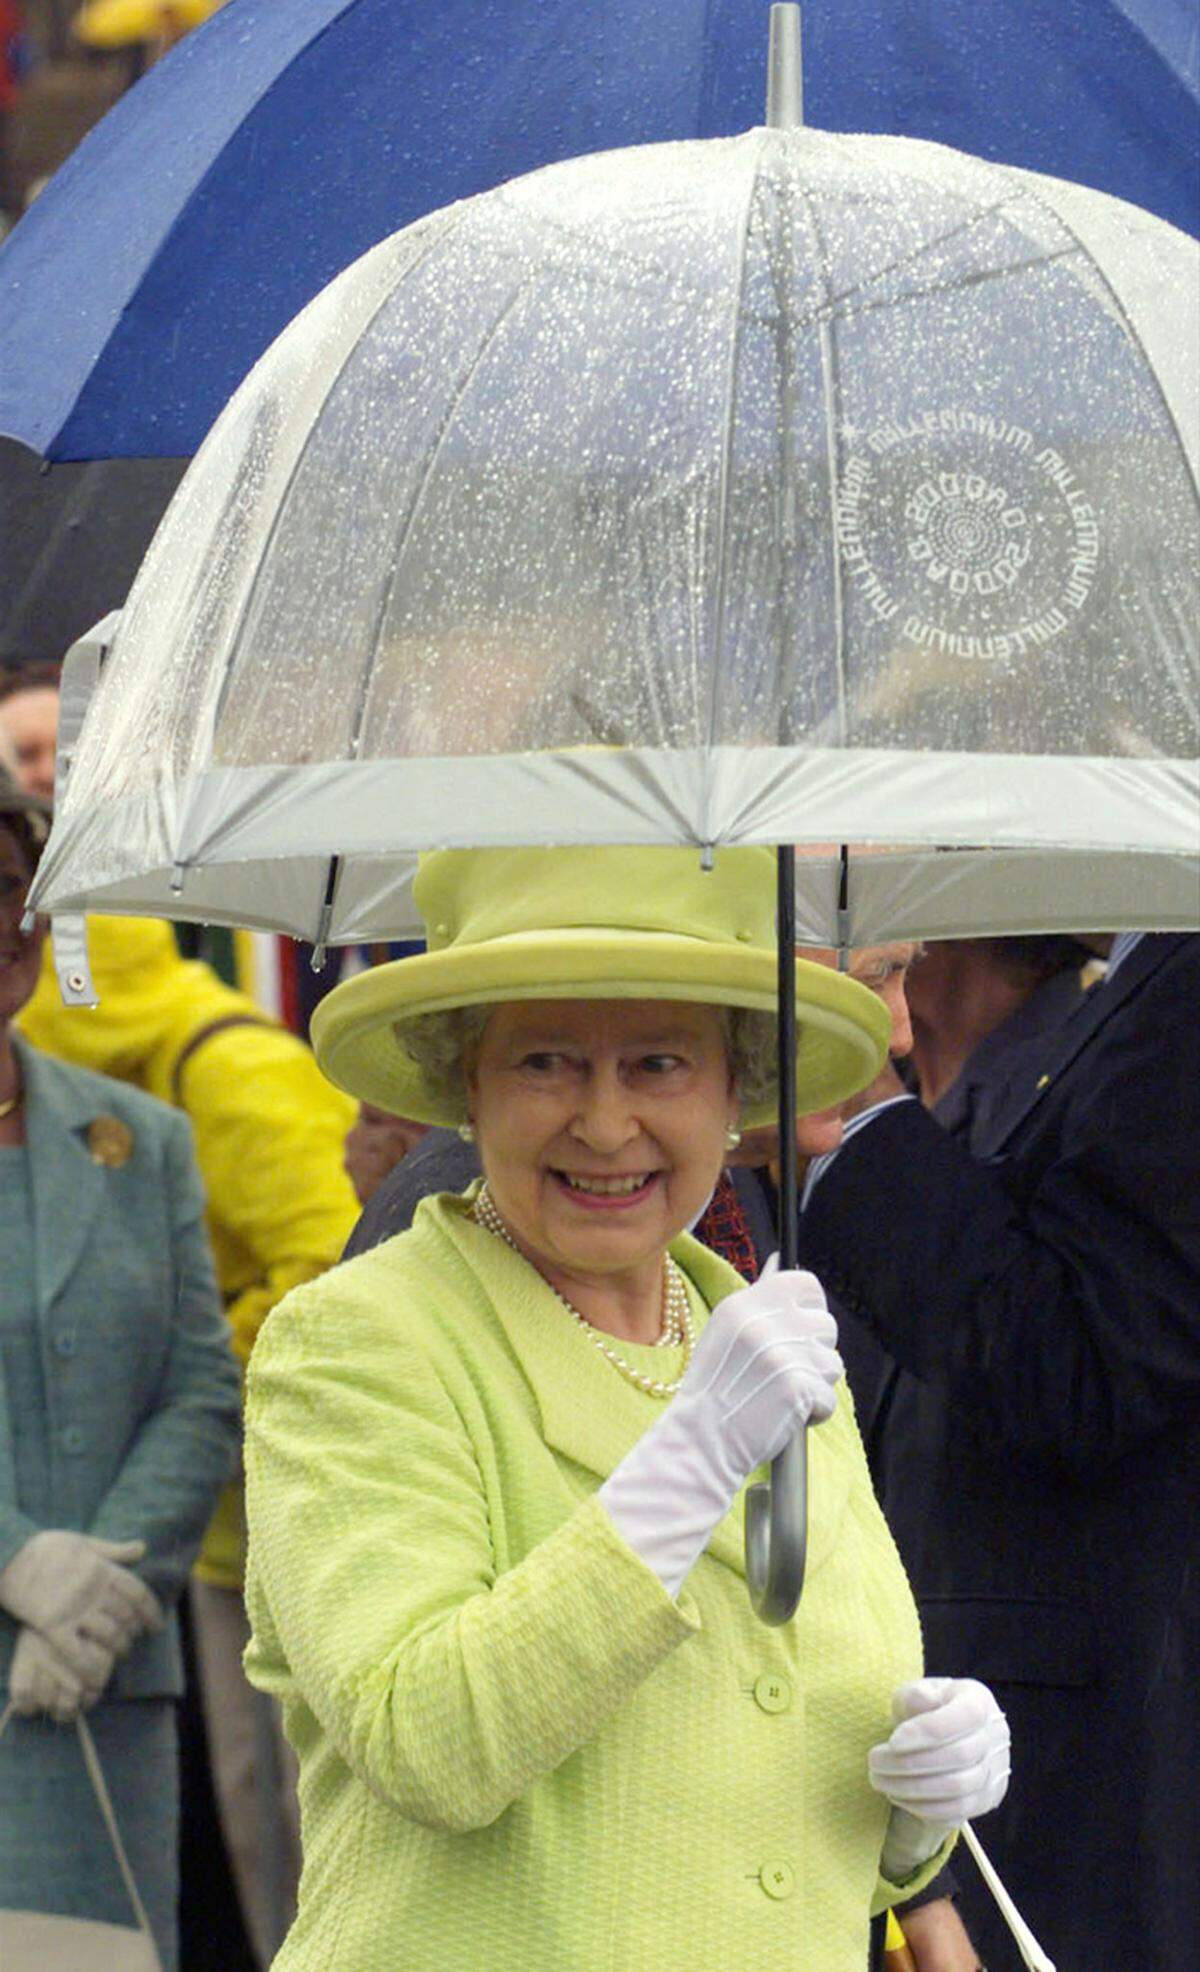 Dabei bevorzugt die Königin durchsichtige Regenschirme, schließlich will ihr Volks sie bei öffentlichen Auftritten auch sehen. Diese werden bei Fulton im Londoner East End hergestellt.